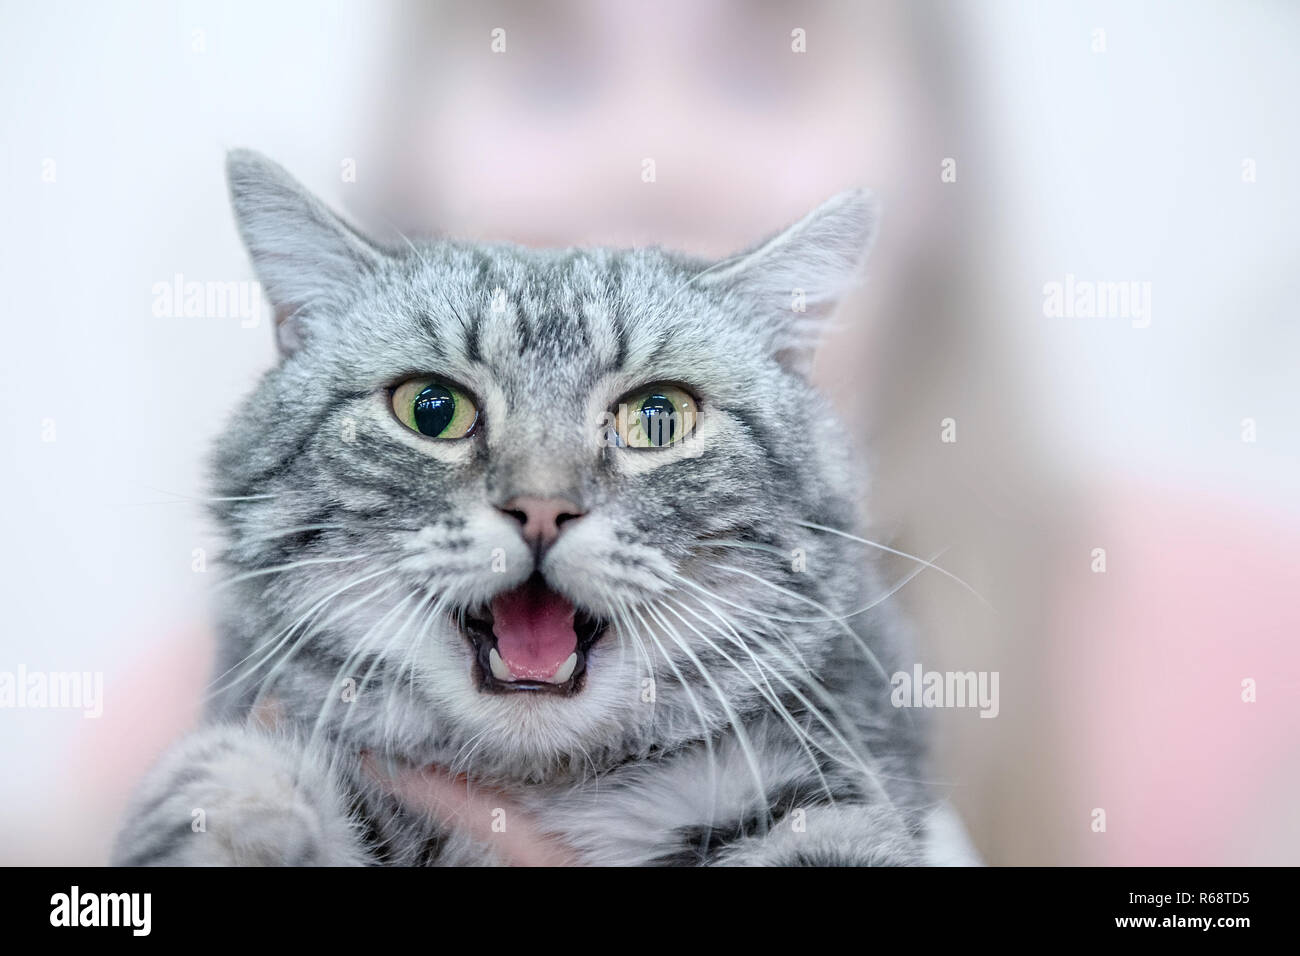 Schöne graue Katze zeigt Zunge mit Mund offen. Porträt Stockfotografie -  Alamy